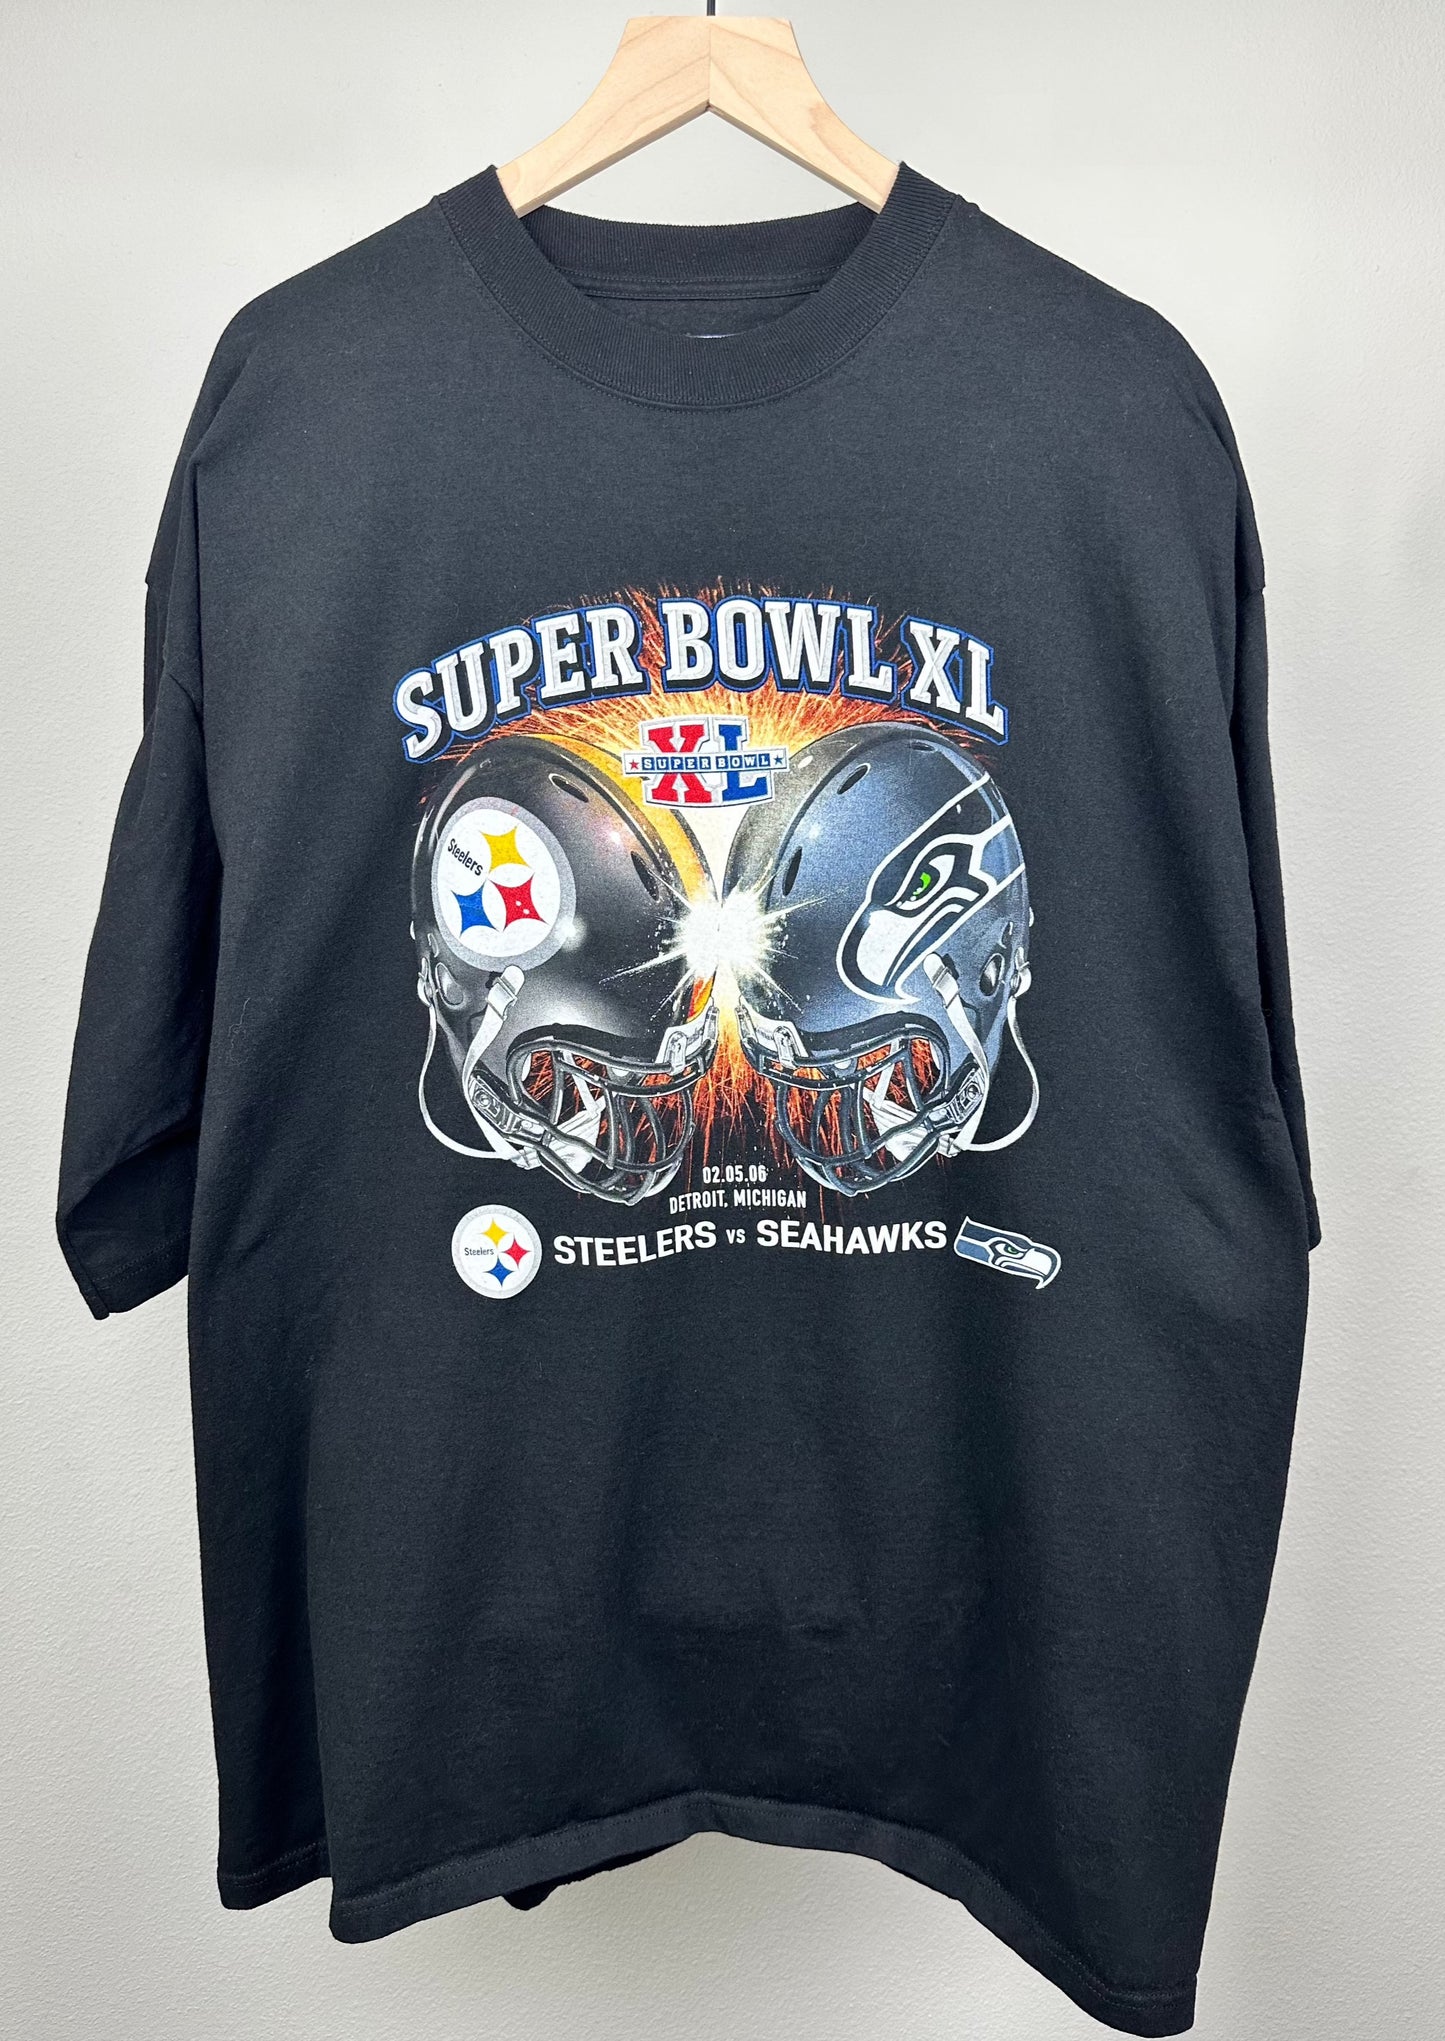 Super Bowl XL Retro T-Shirt